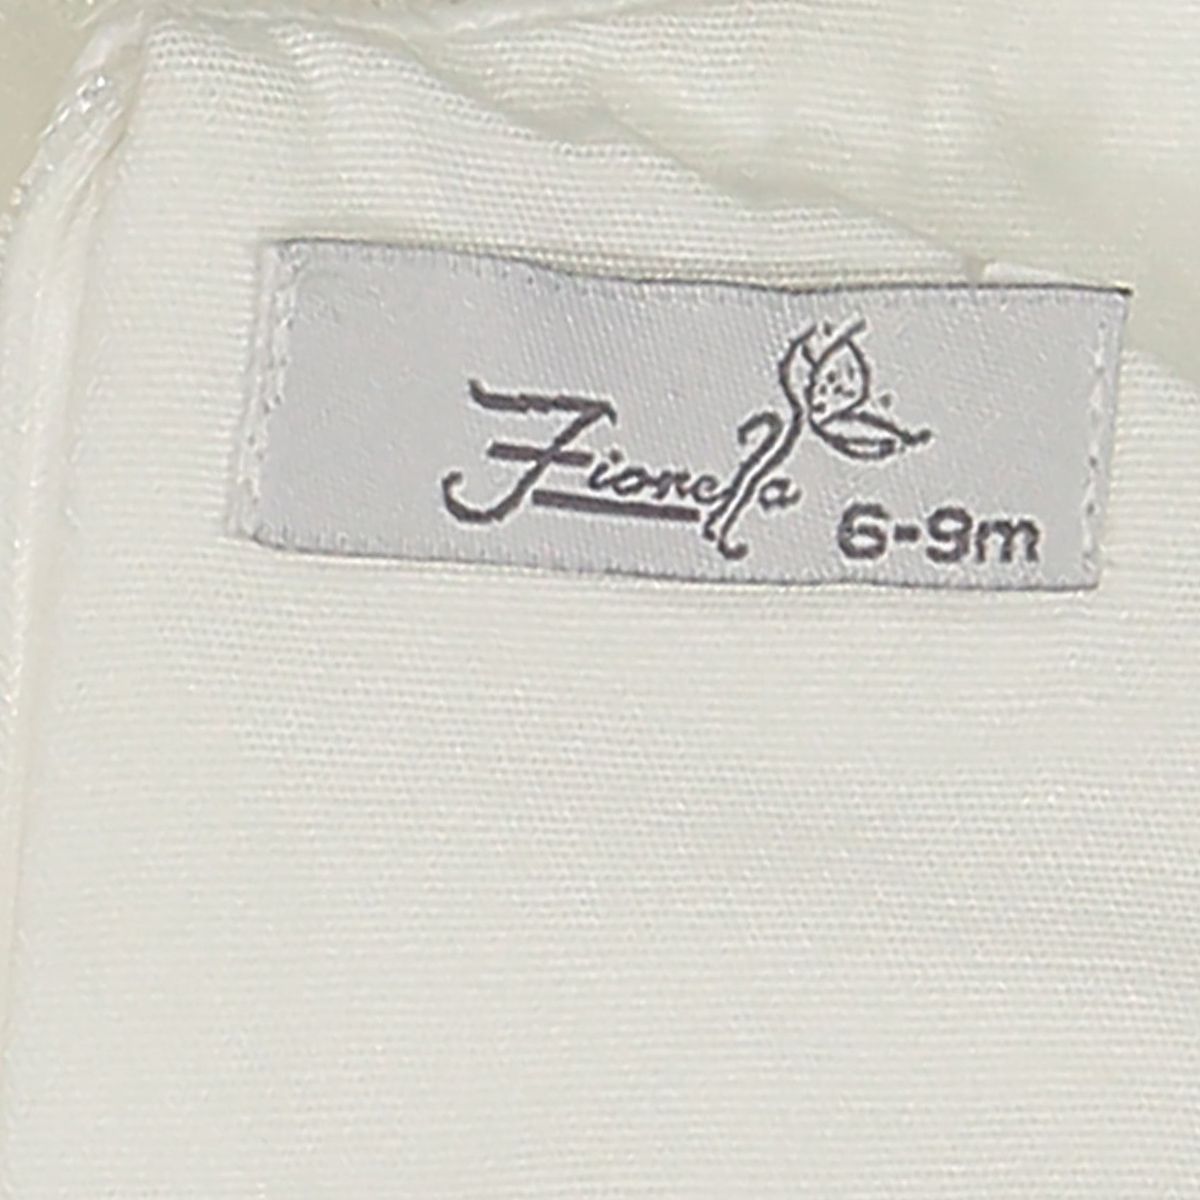 ست تی شرت و شلوارک نوزادی فیورلا مدل 21029 -  - 6